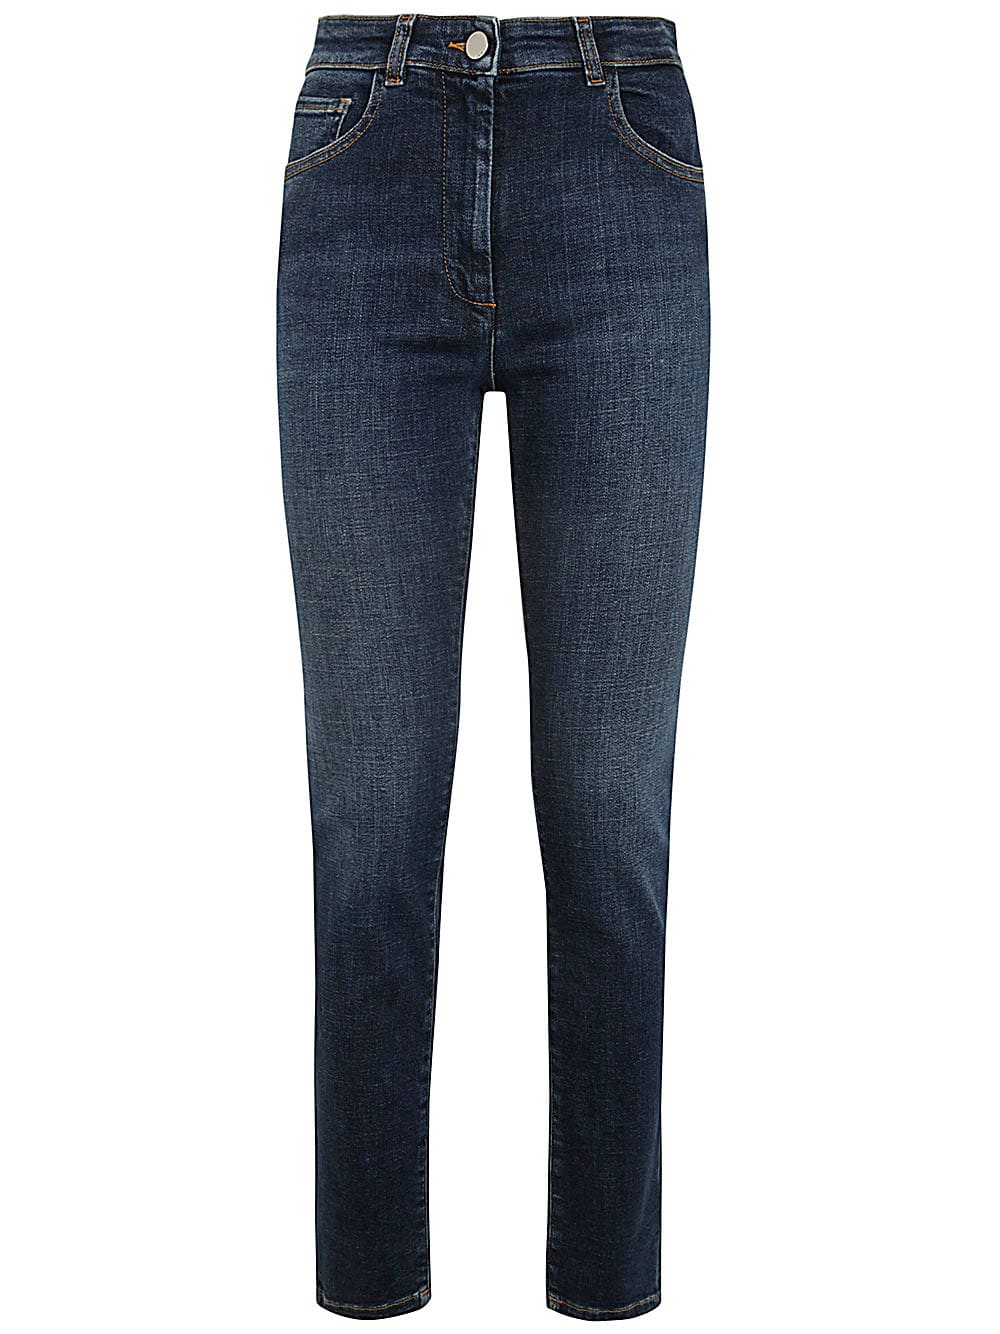 Shop Seventy Skinny Jeans In Indigo Denim